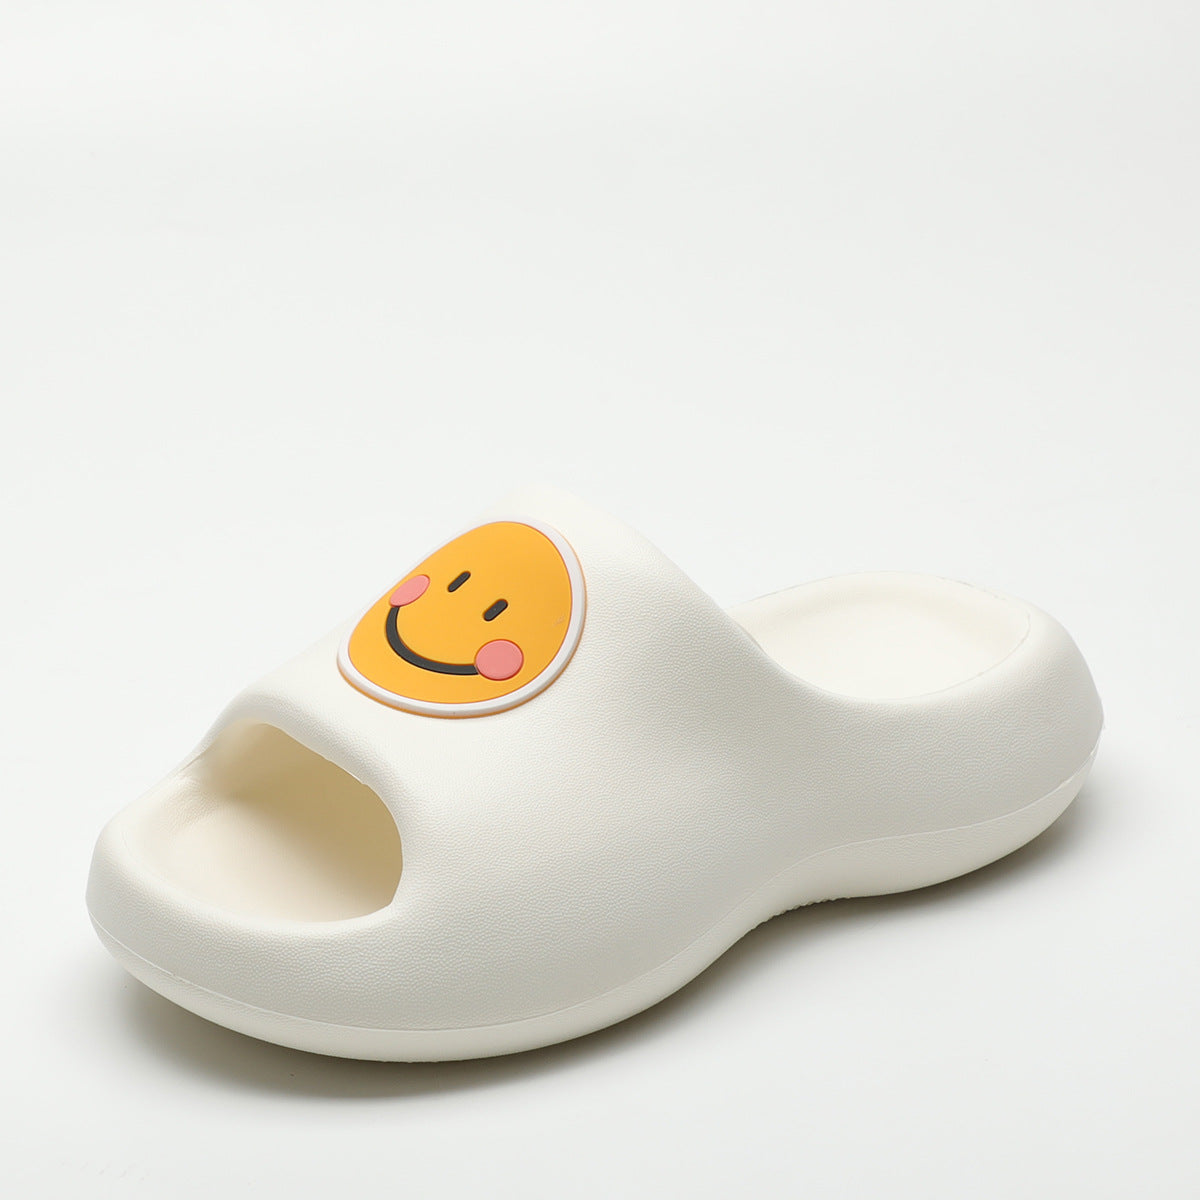 Women's Smiley Face Platform Summer Wear Interior Sandals